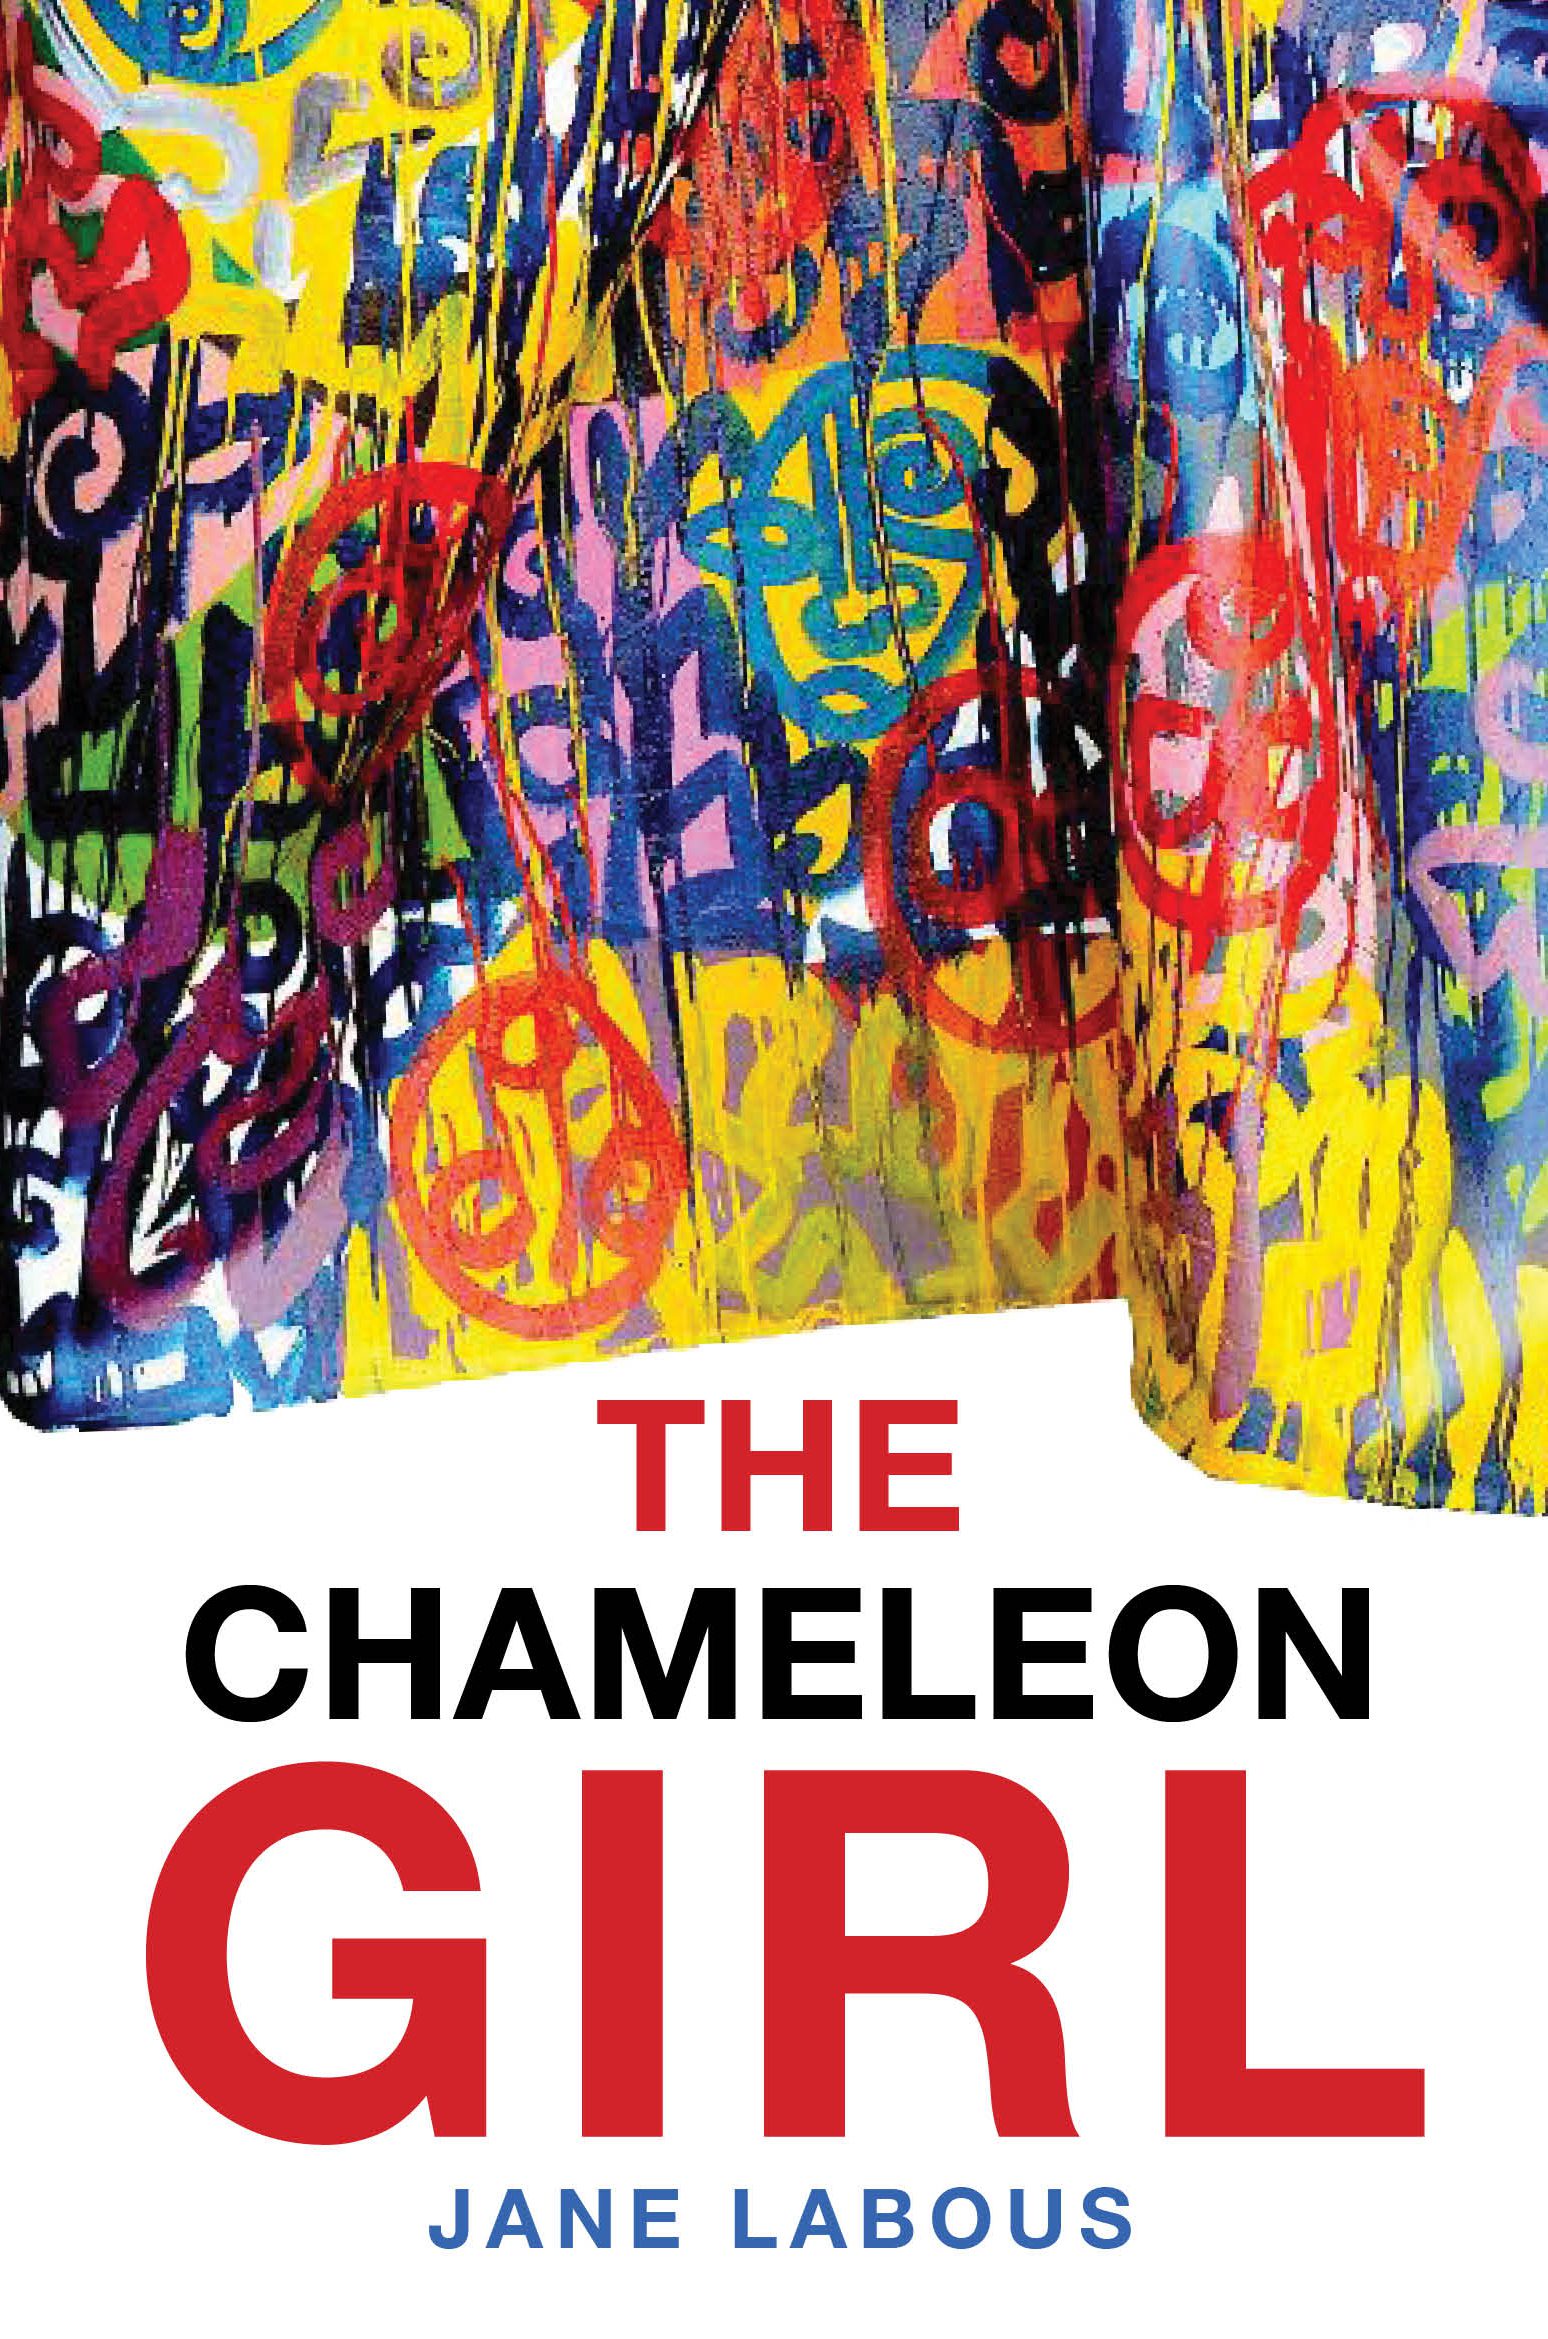 The Chameleon Girl